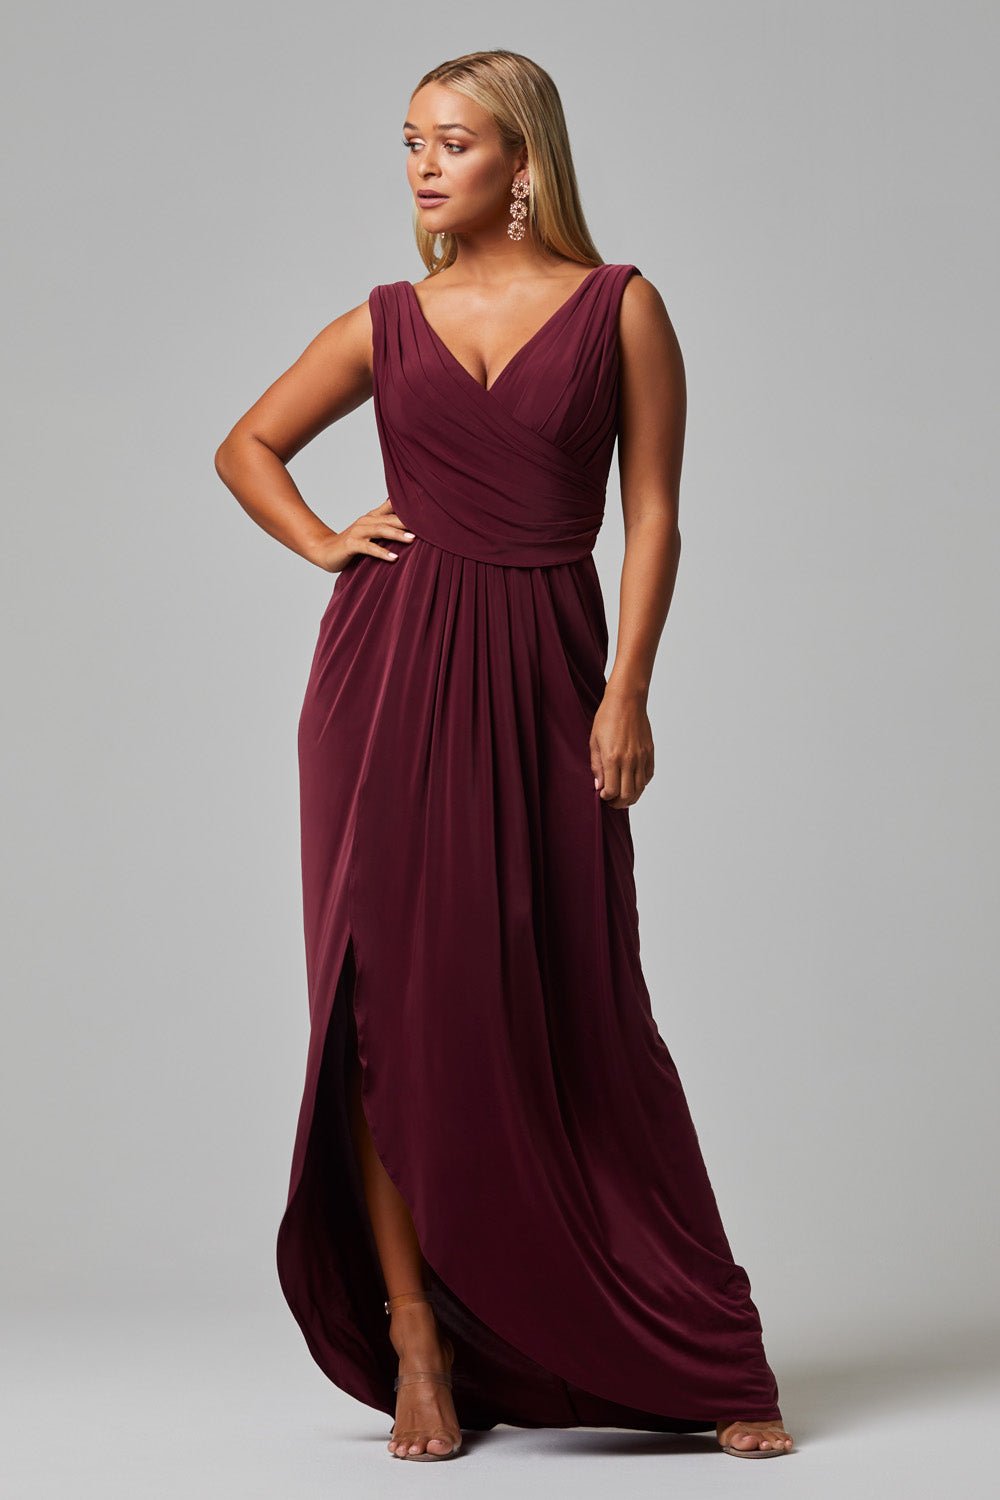 Kalani Dress By Tania Olsen Sizes 4 - 18 TO817 - ElissaJay Boutique